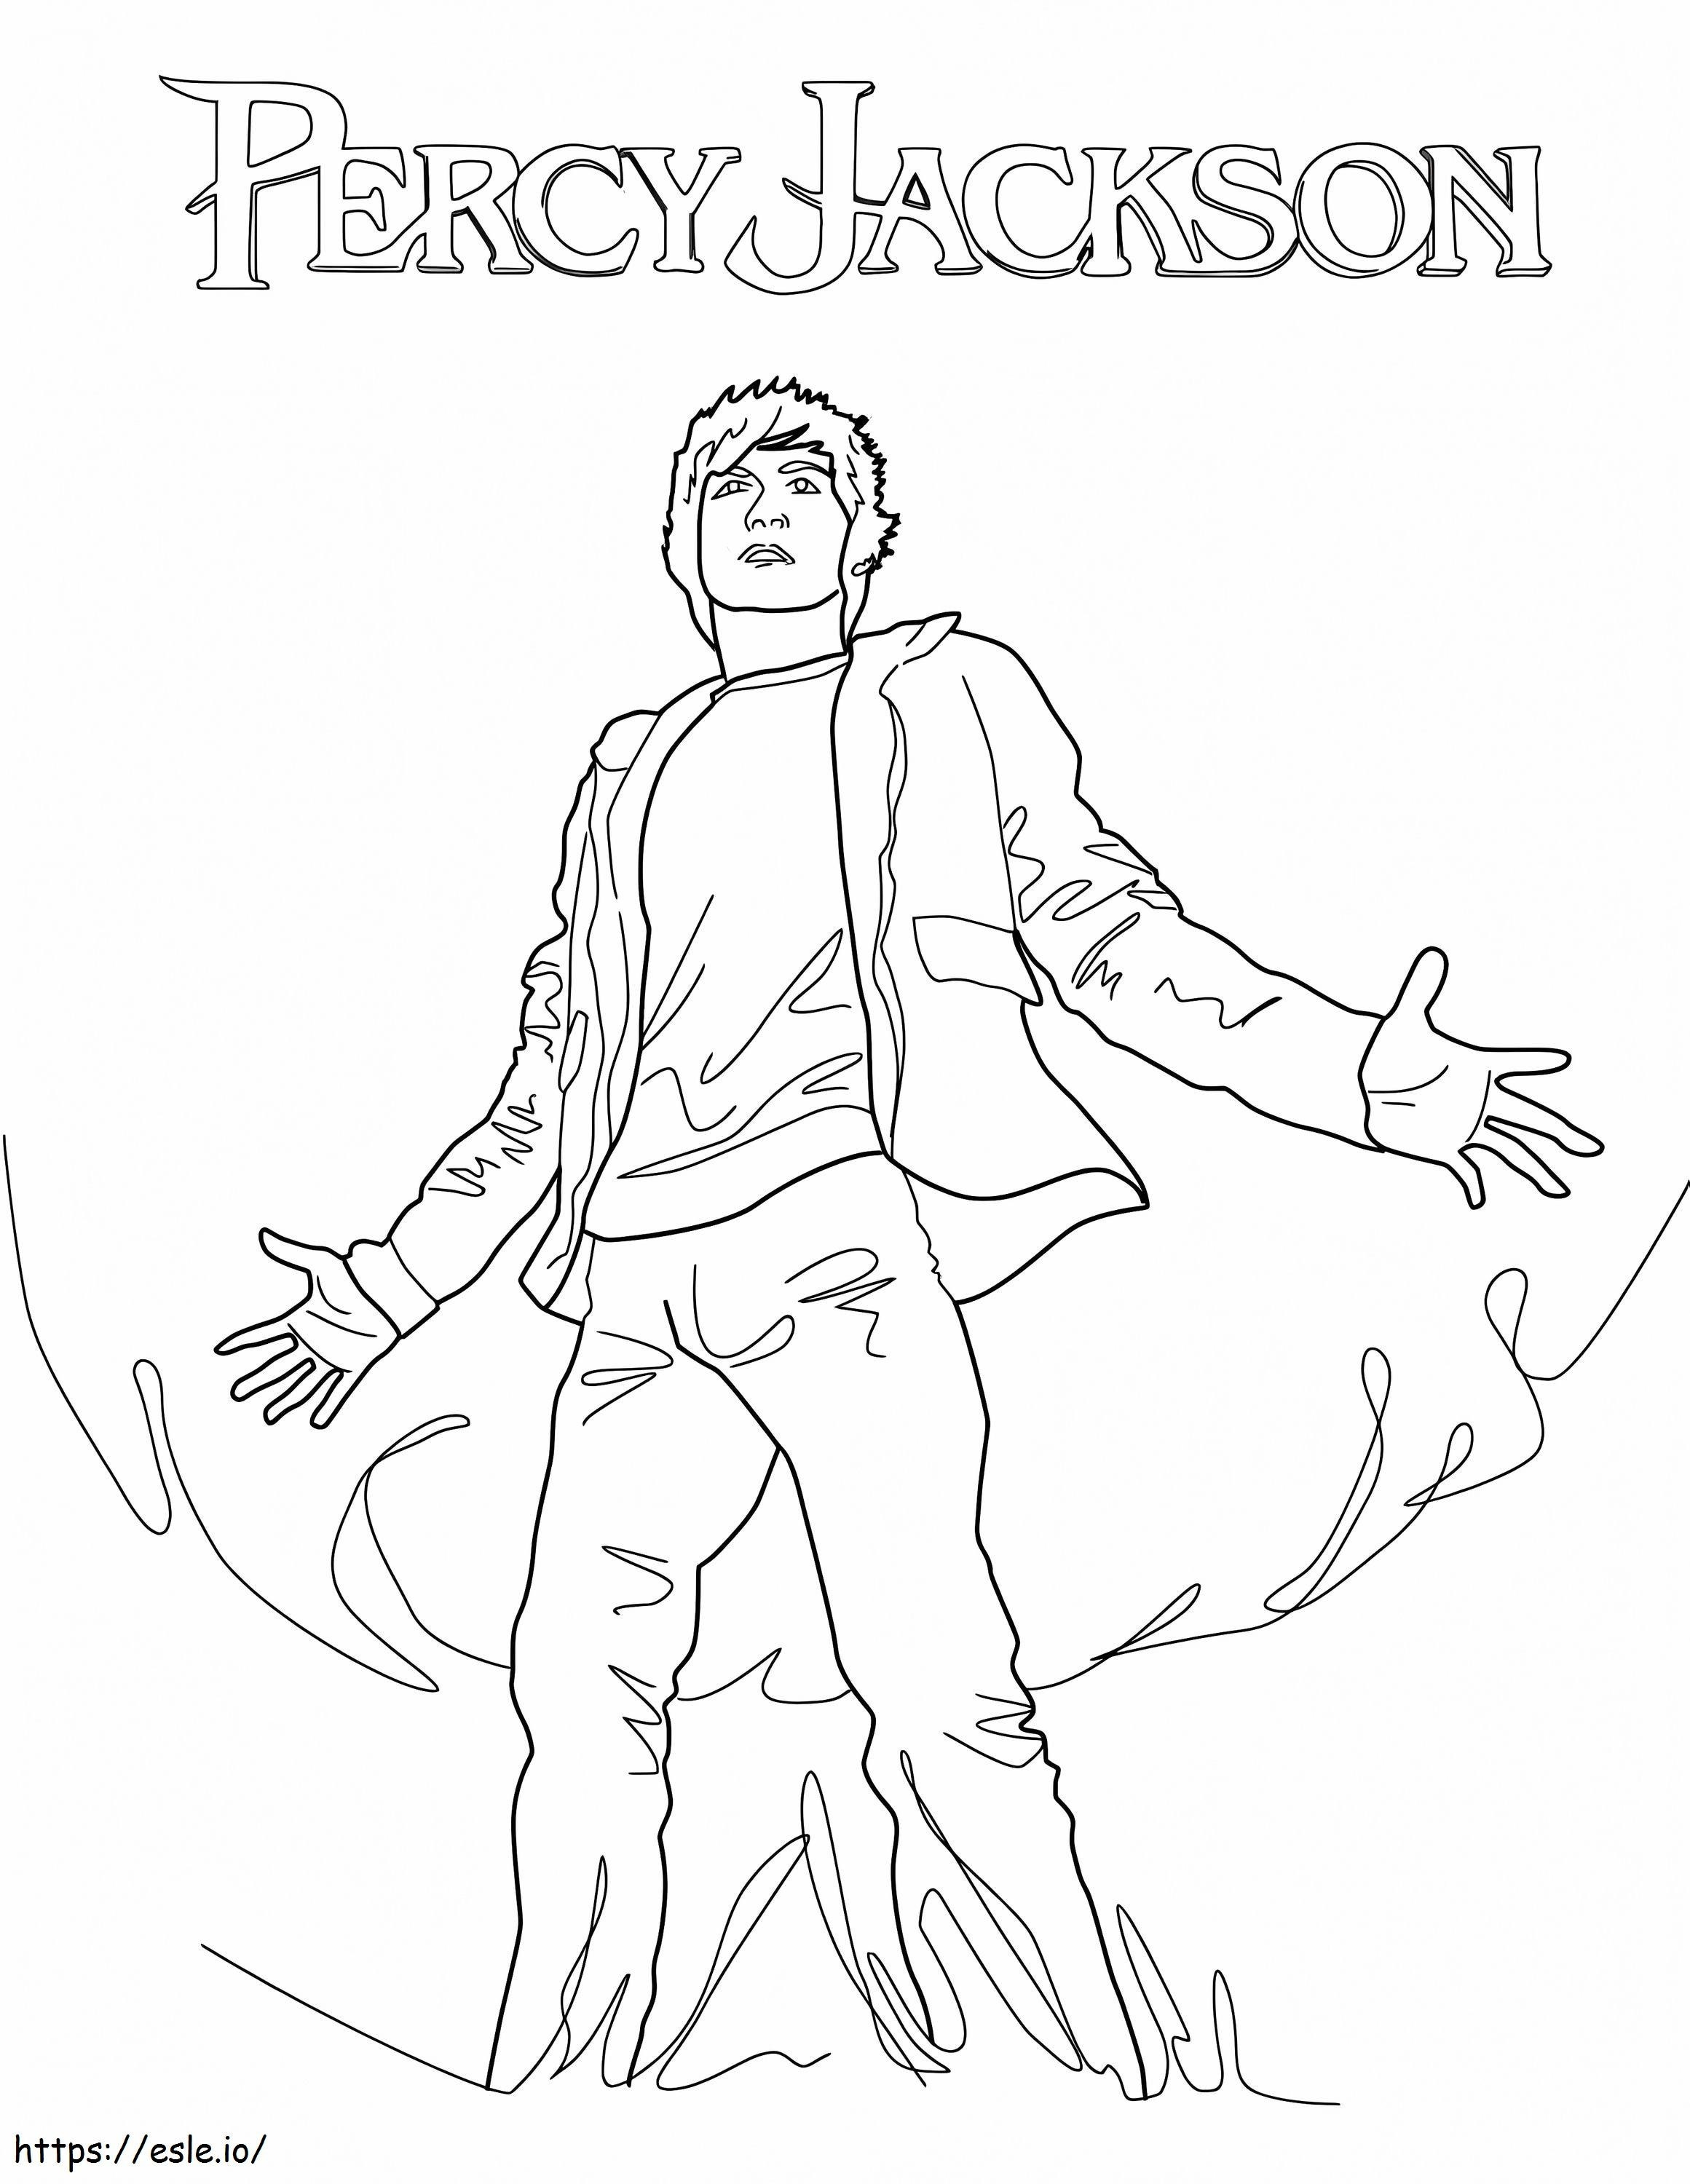 Percy Jackson ereje kifestő